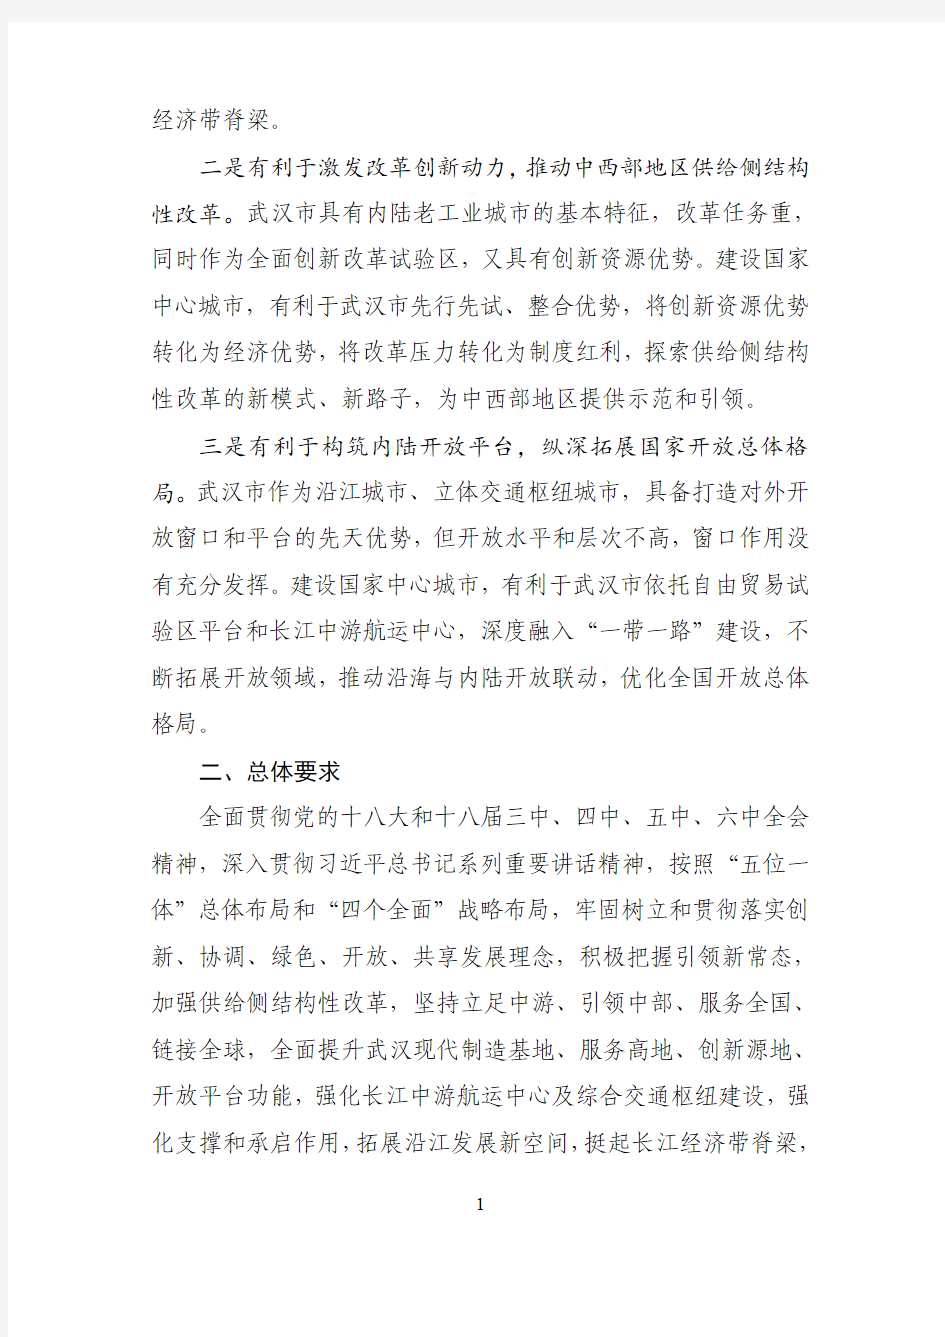 国家发展改革委关于支持武汉建设国家中心城市的指导意见--中国市场经济研究院